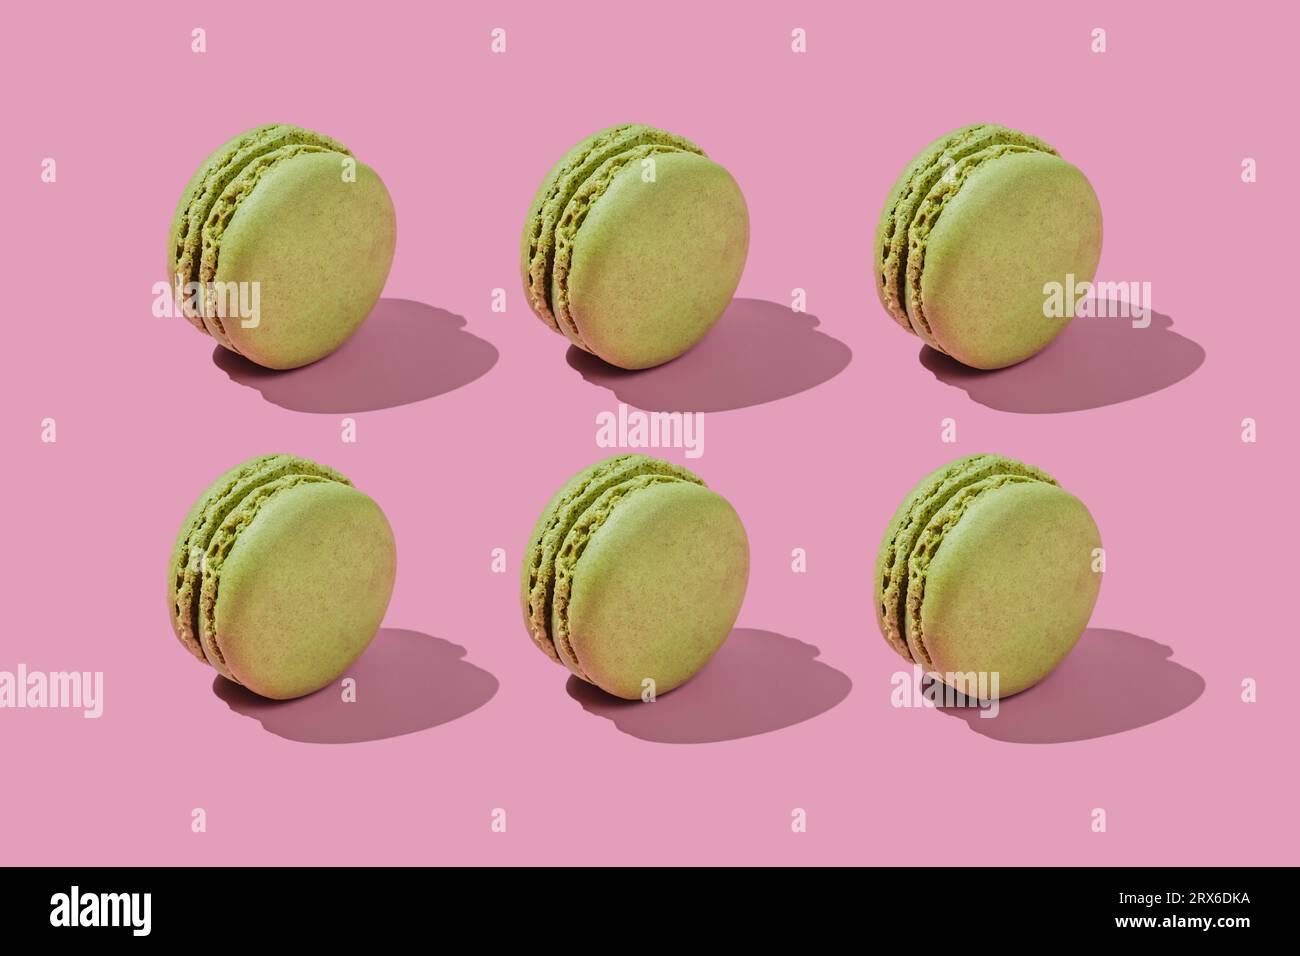 Macaron verdi disposti su sfondo rosa Foto Stock